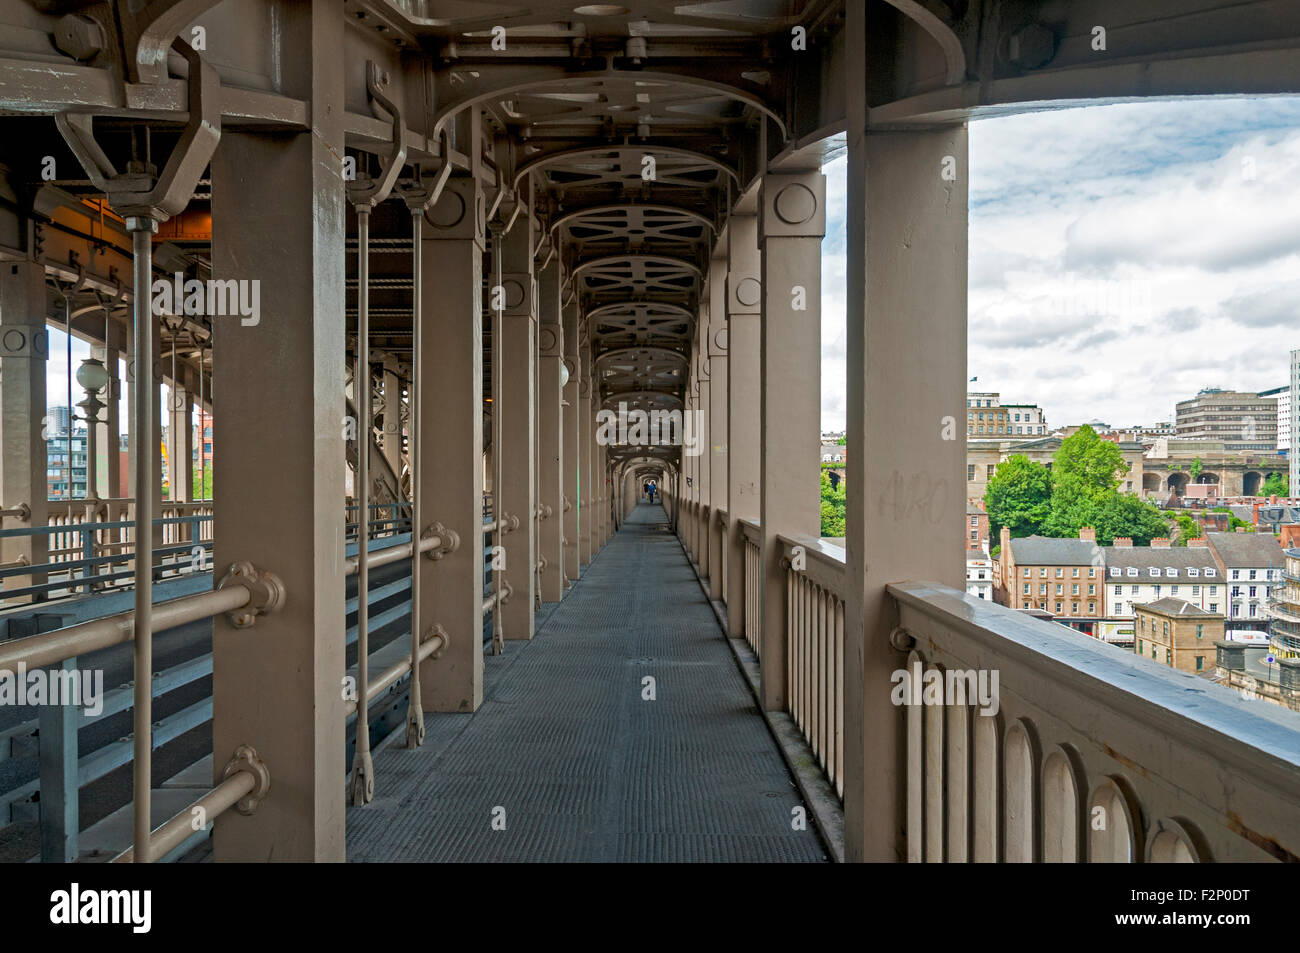 La promenade sur le pont de haut niveau, Western New Kent Hotel, Tyne et Wear, Angleterre, Royaume-Uni. Banque D'Images